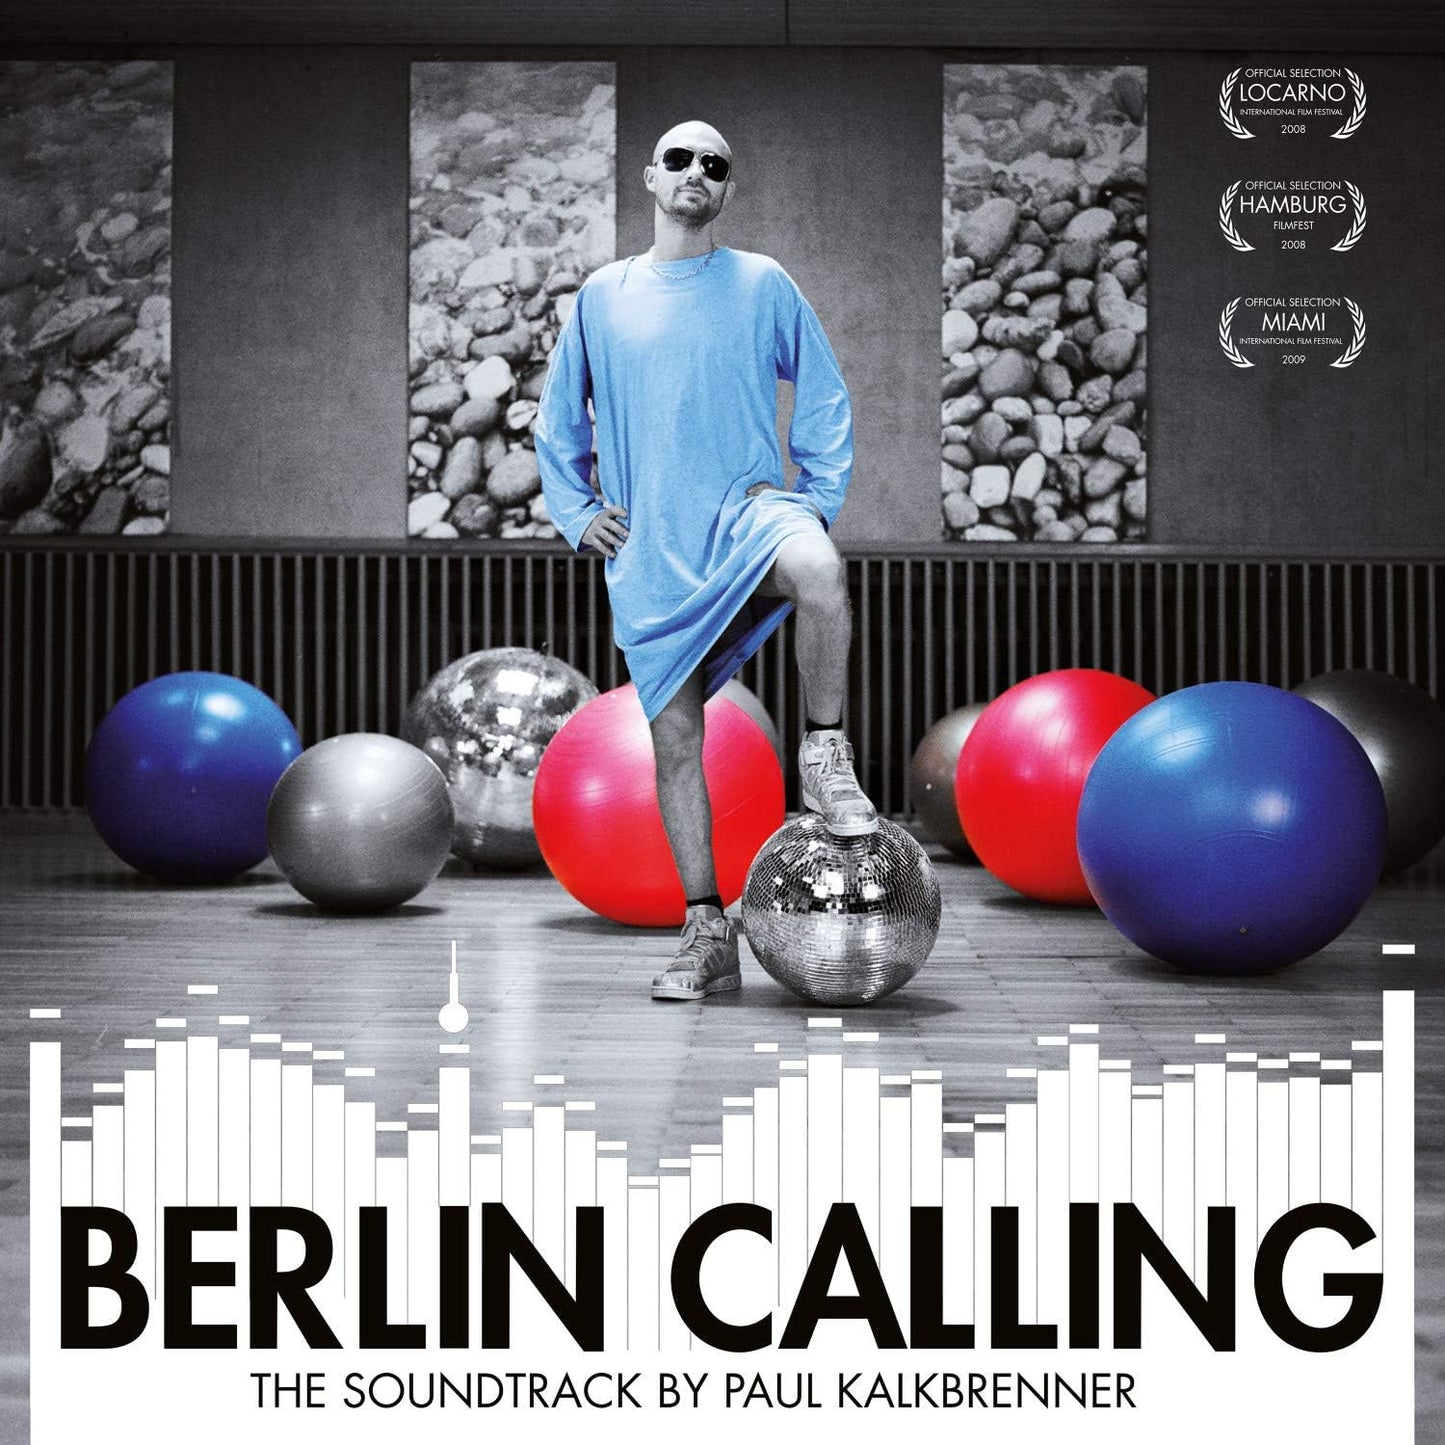 Paul Kalkbrenner - Berlin calling (Vinile 180gr.)